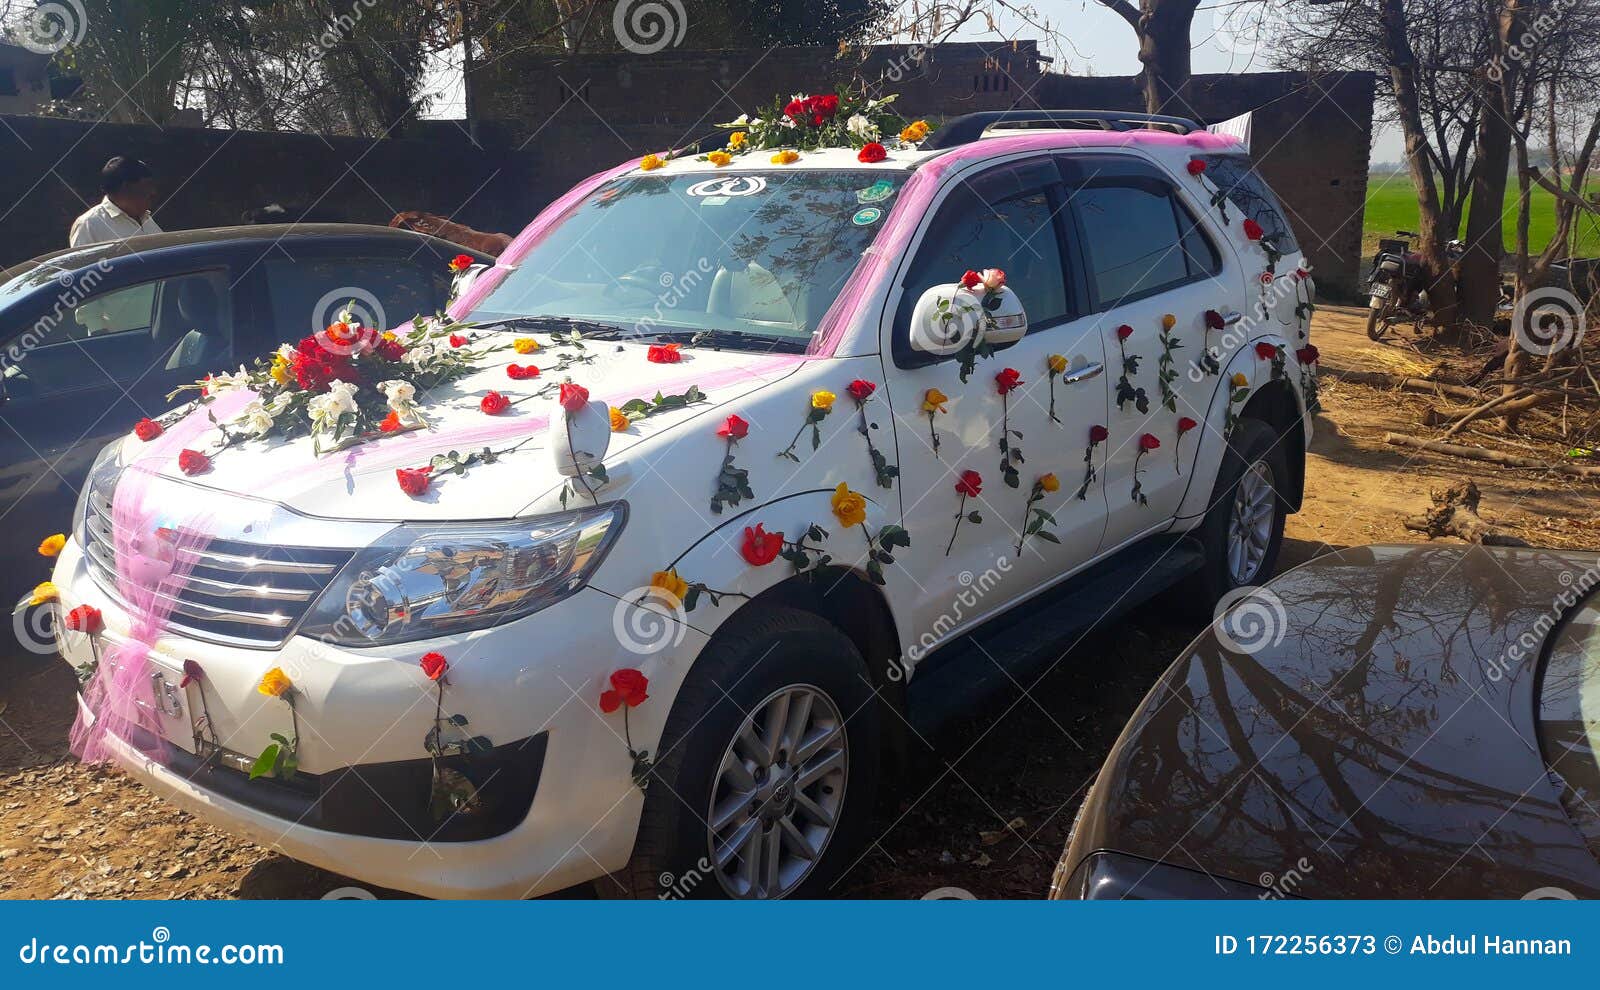 Wedding car decoration||Indian wedding decoration||wedding decoration||Best car  decoration||shorts - video Dailymotion